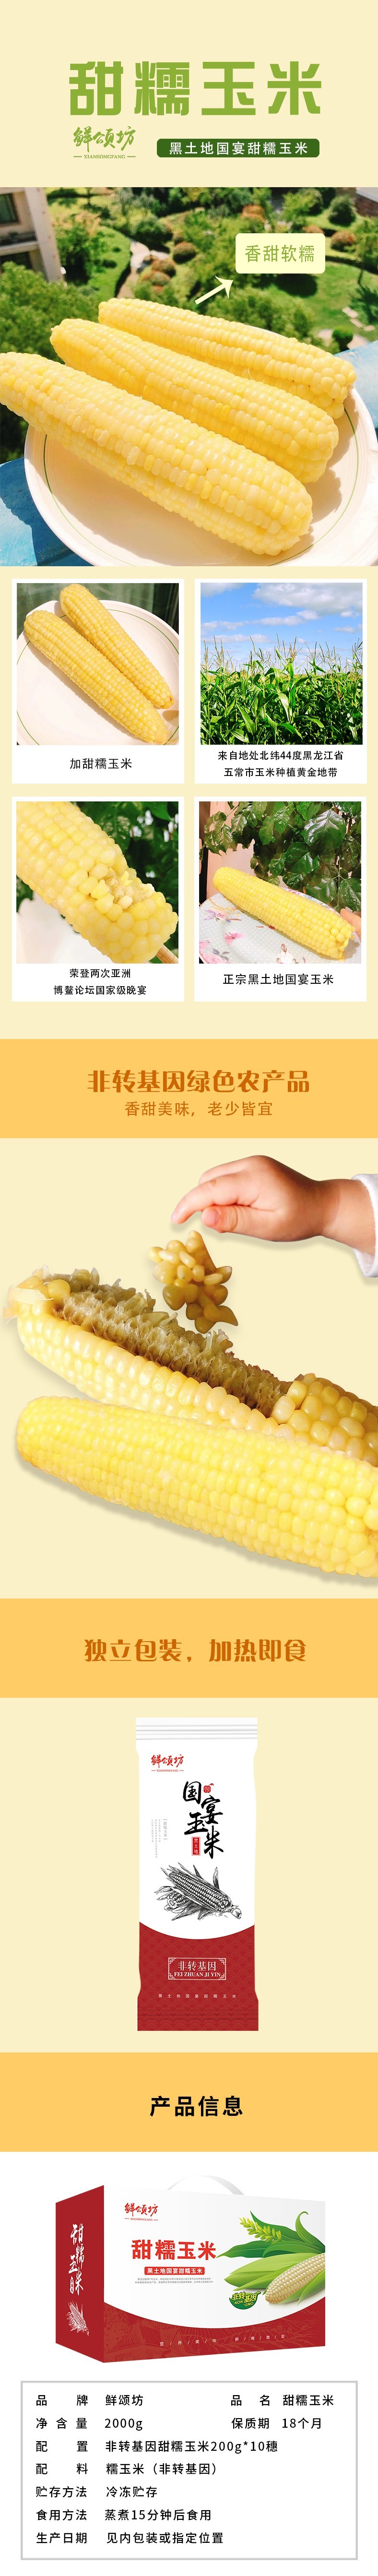 玉米詳情1.jpg